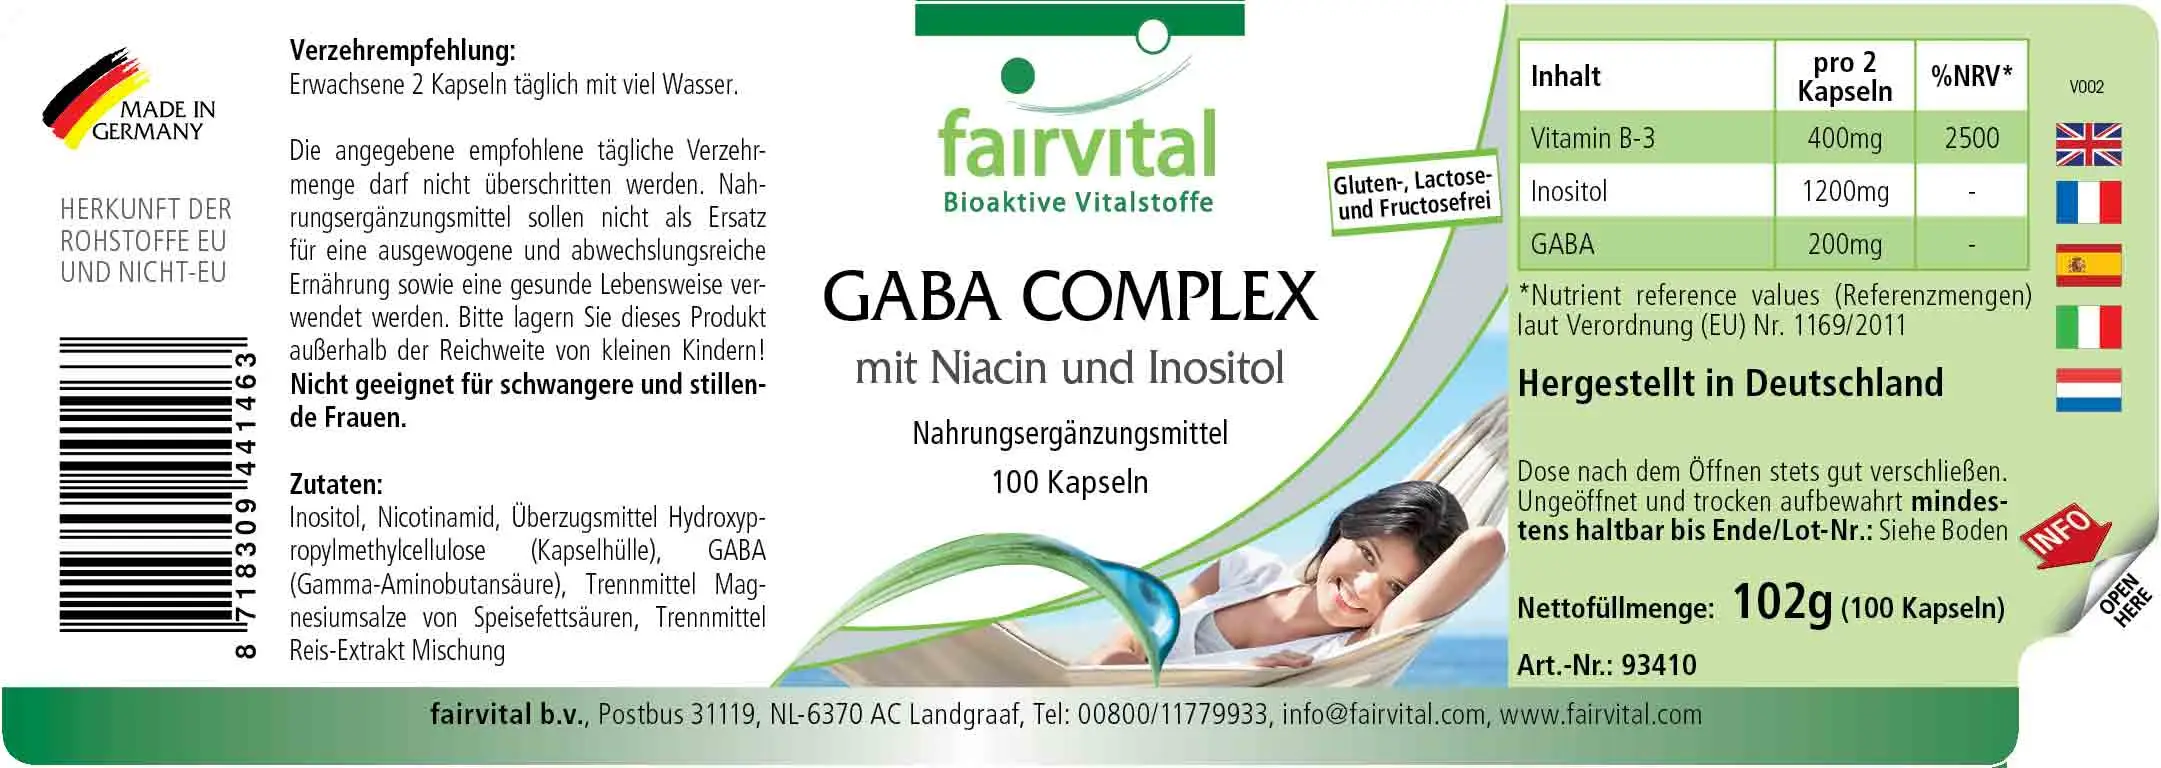 GABA Komplex mit Niacin und Inositol